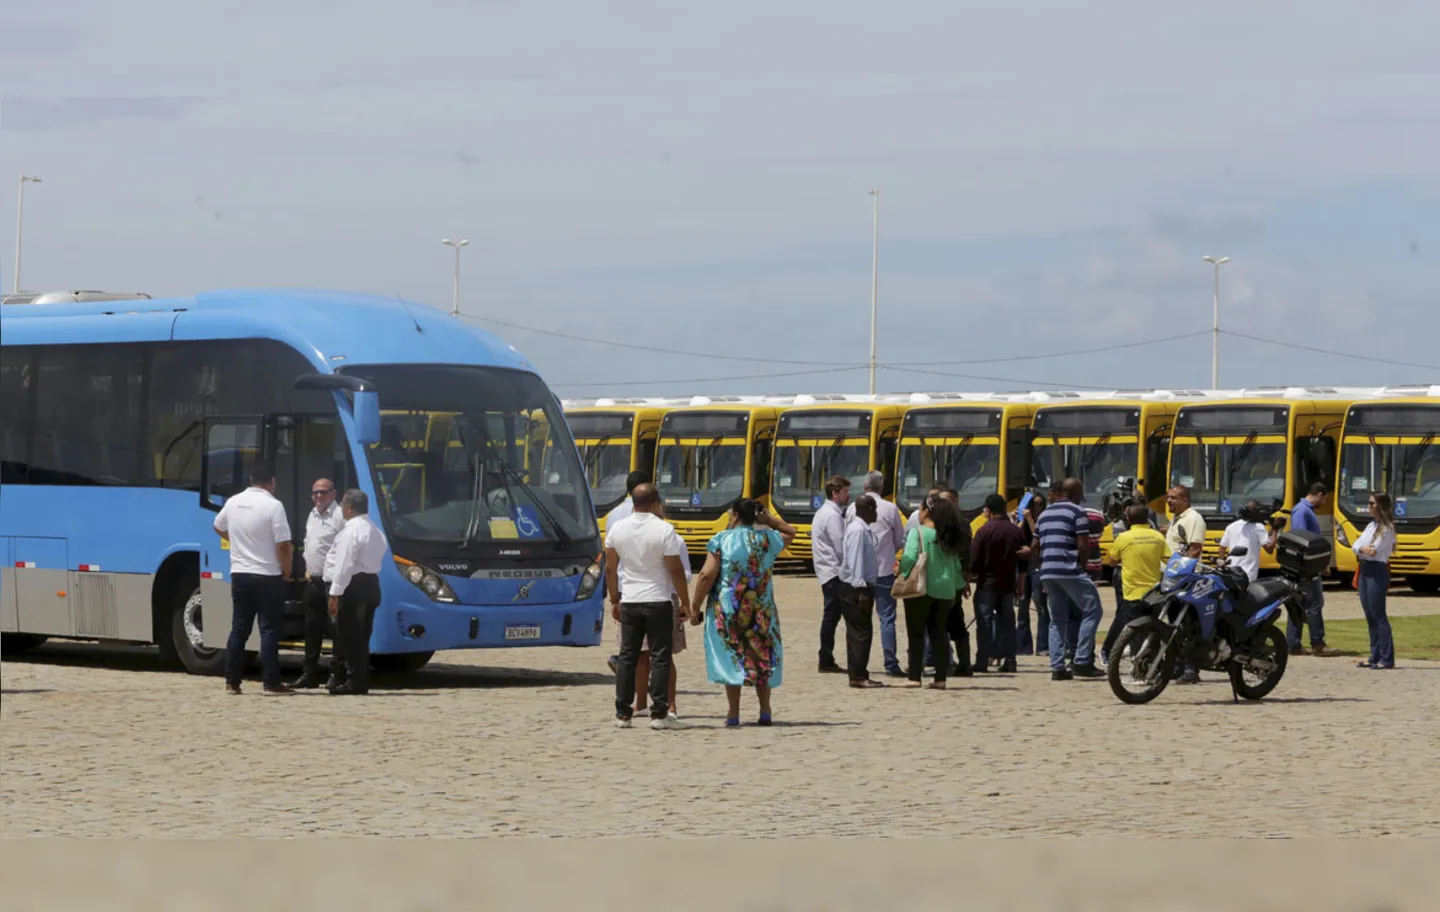 Novos ônibus com ar-condicionado e veículo do sistema BRT (azul)